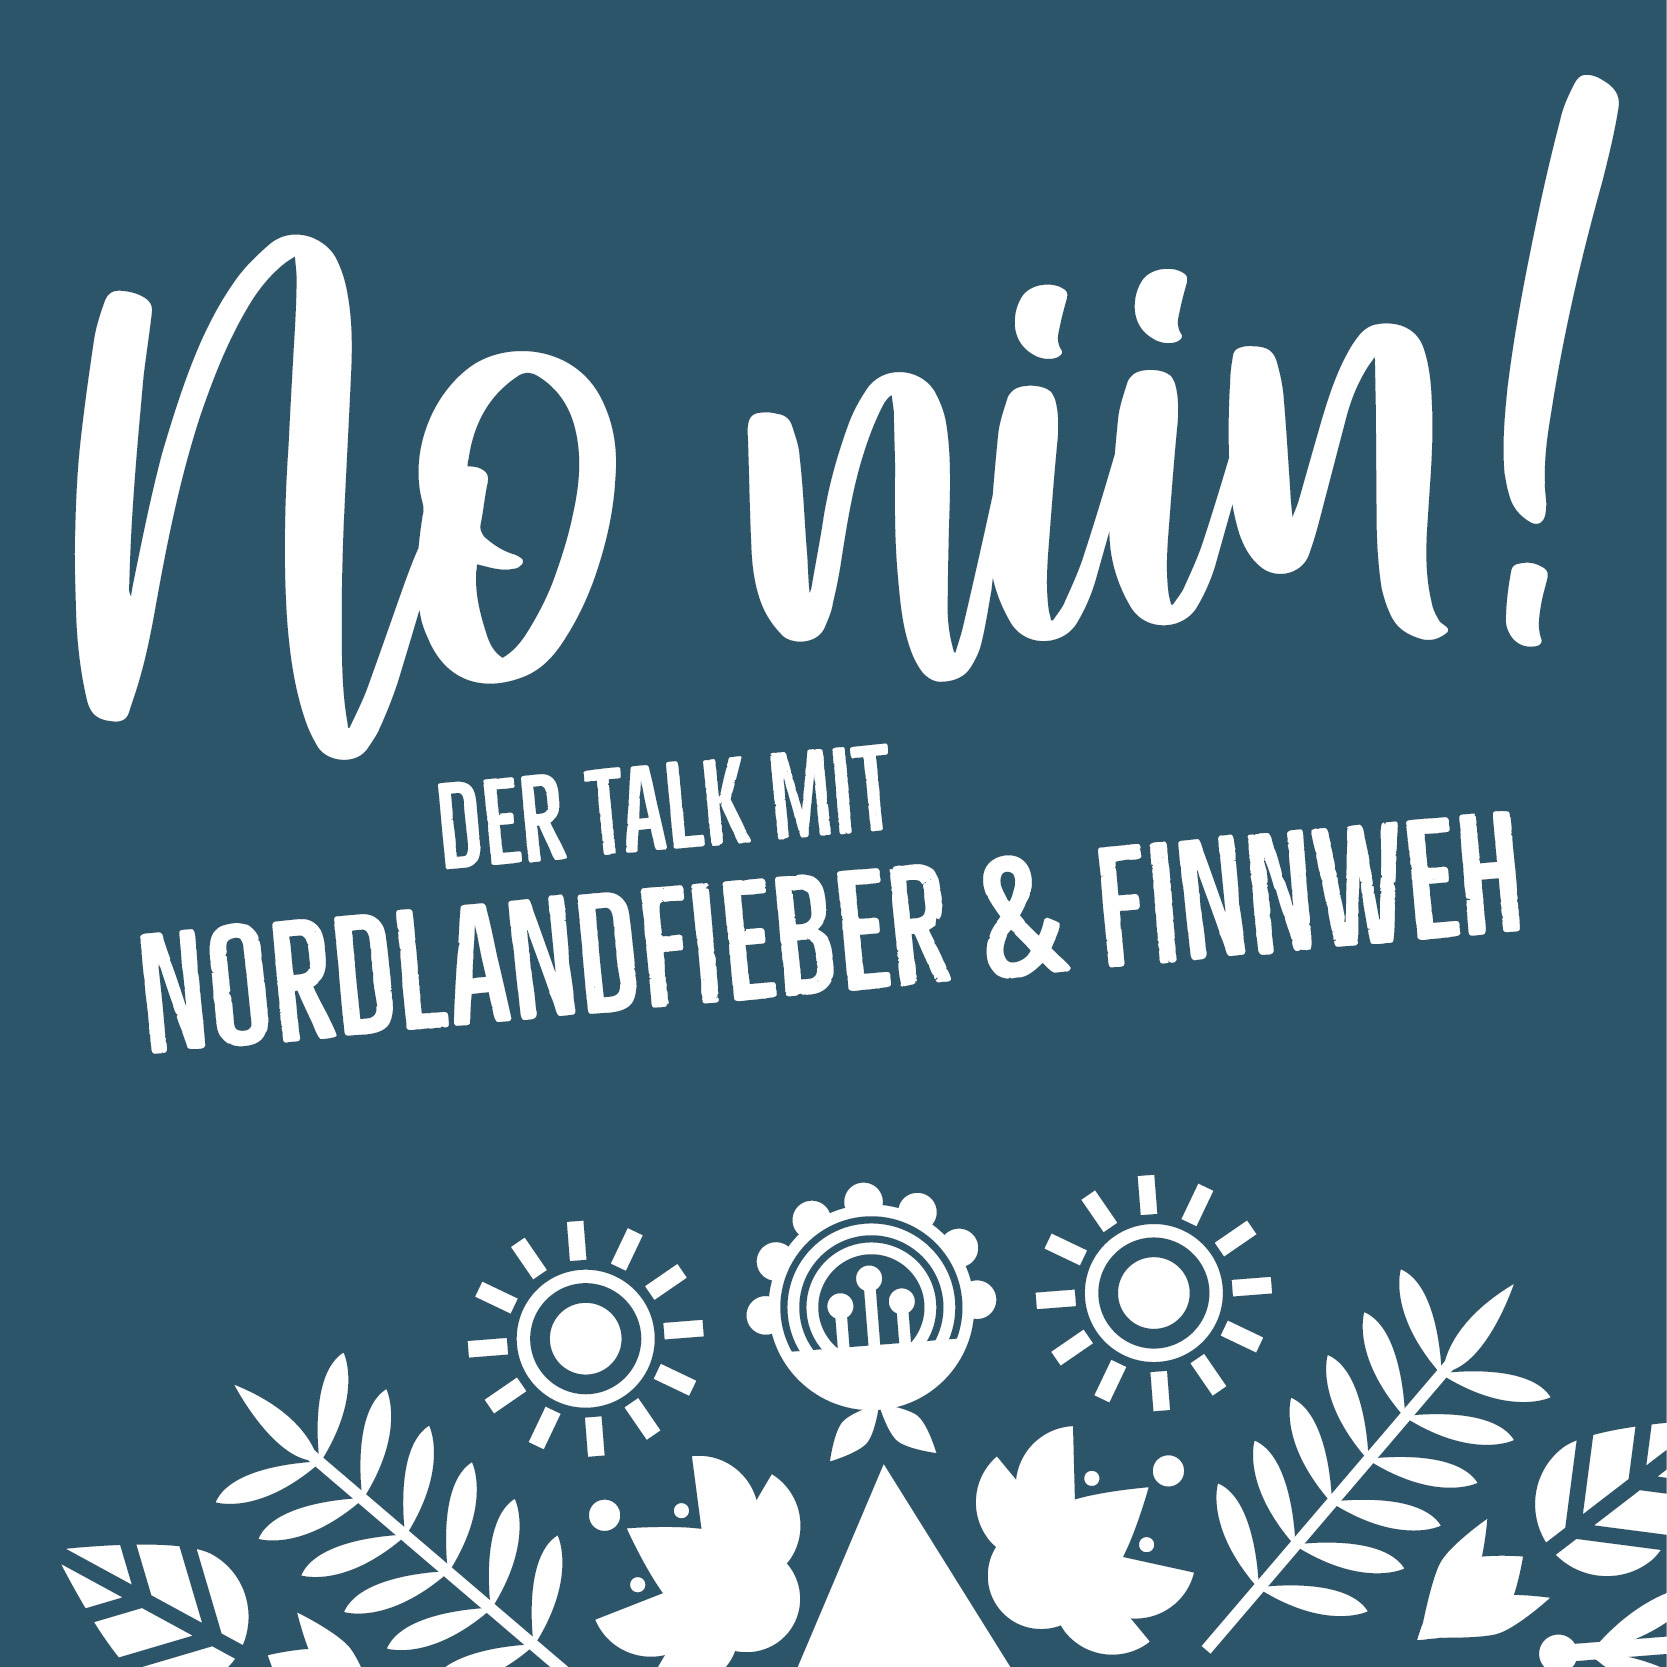 Auf Deck 11 mit … – No Niin! Der Talk mit Nordlandfieber & Finnweh